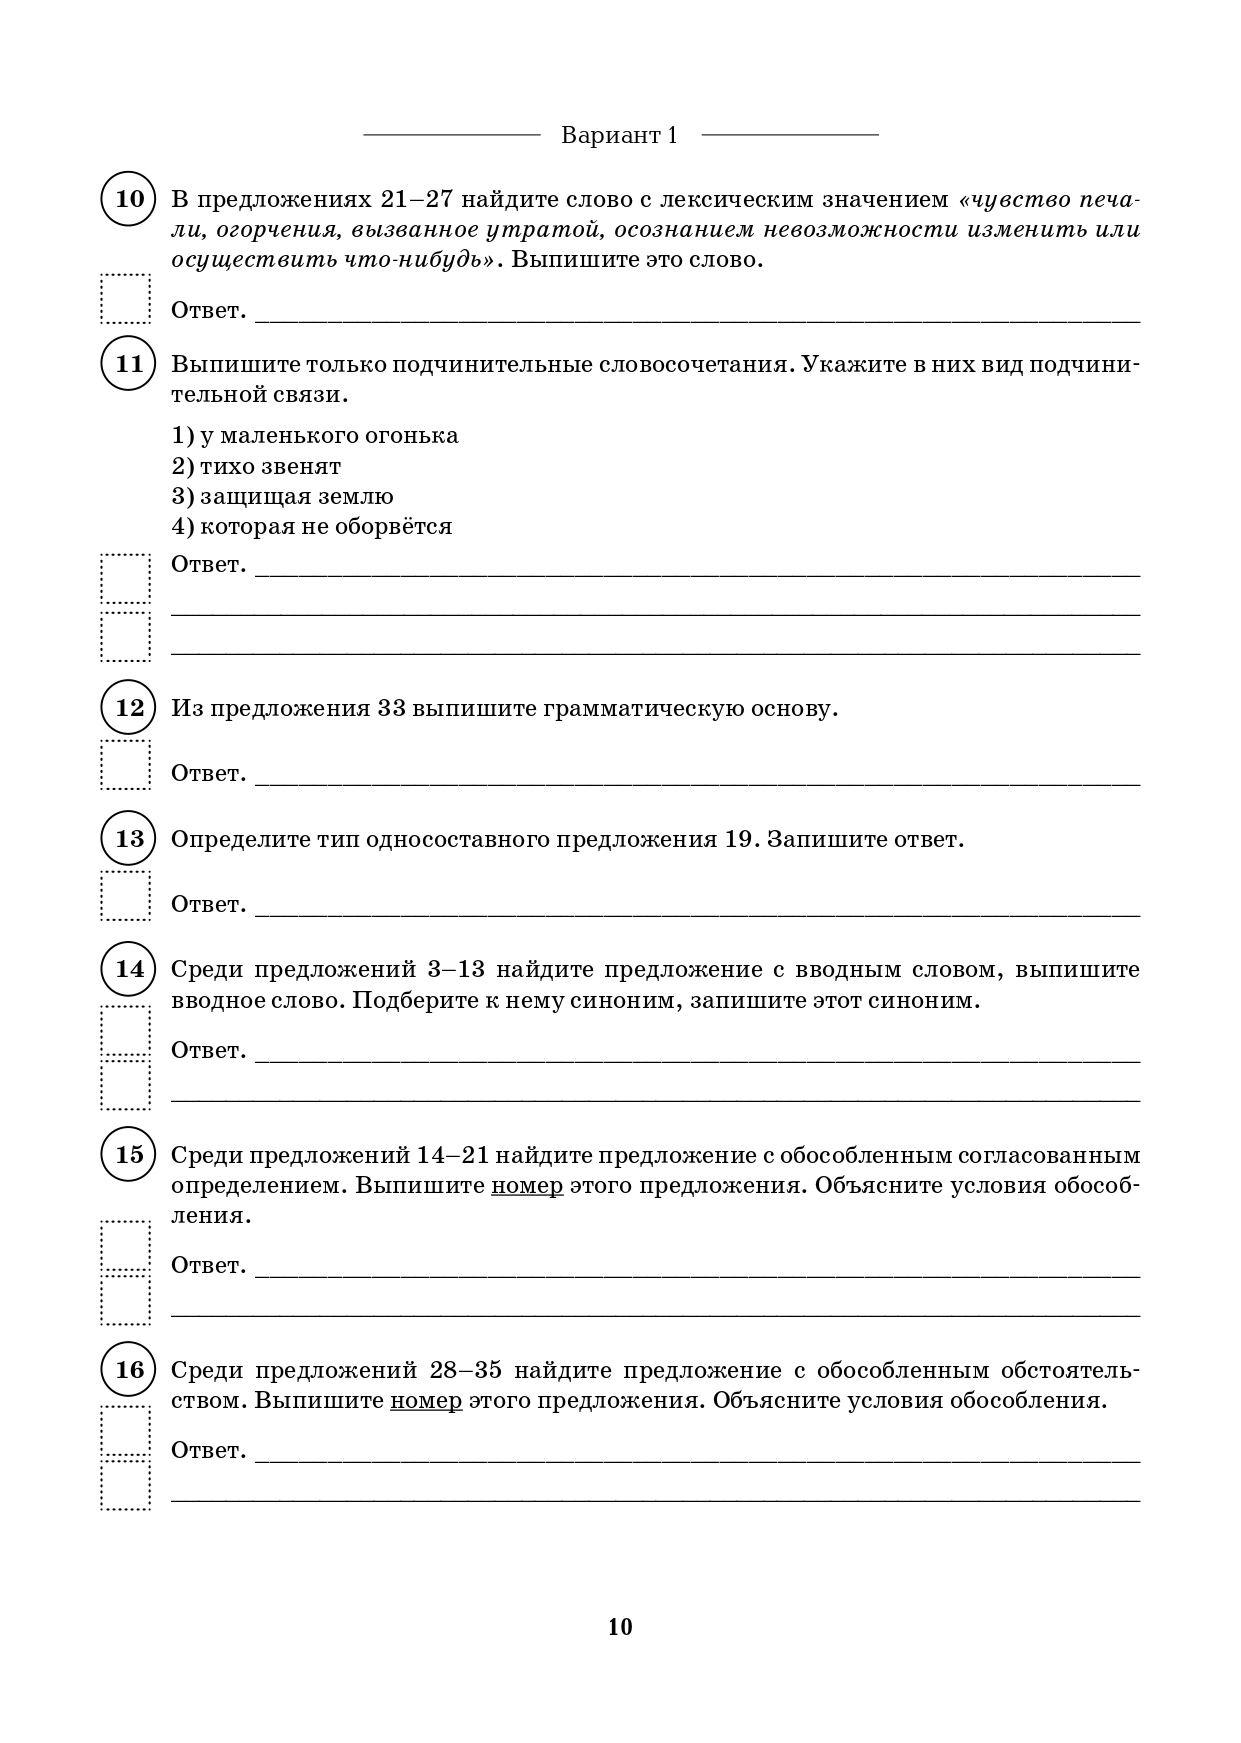 Русский язык. 8 класс. ВПР. 10 тренировочных вариантов. 6-е изд.